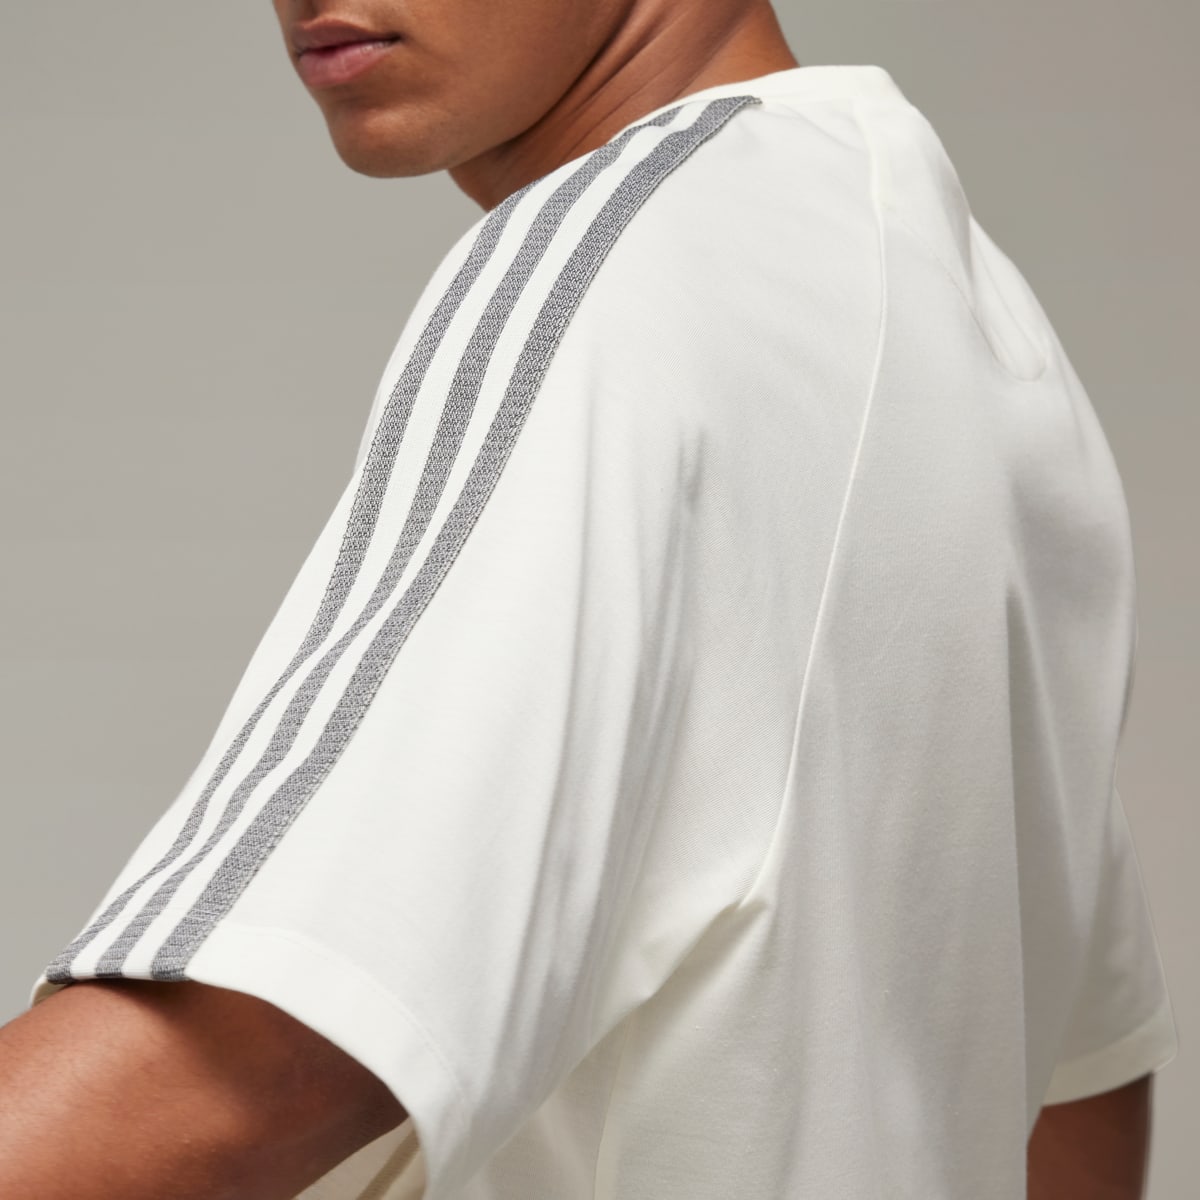 Adidas Y-3 3-Stripes T-Shirt. 6